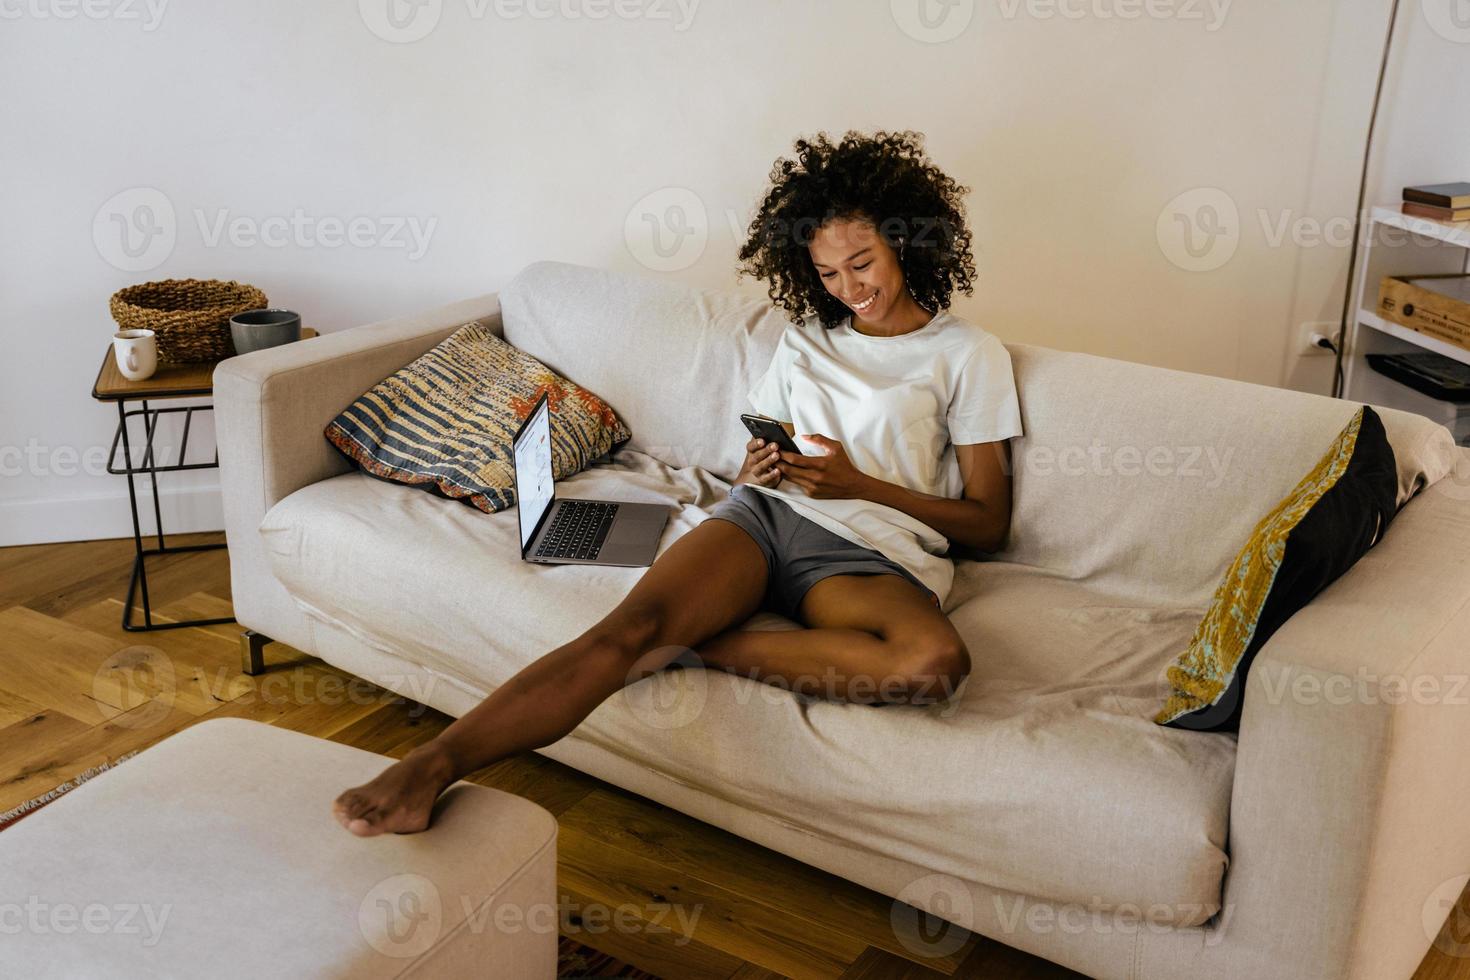 zwarte jonge vrouw die mobiele telefoon gebruikt terwijl ze op de bank rust foto